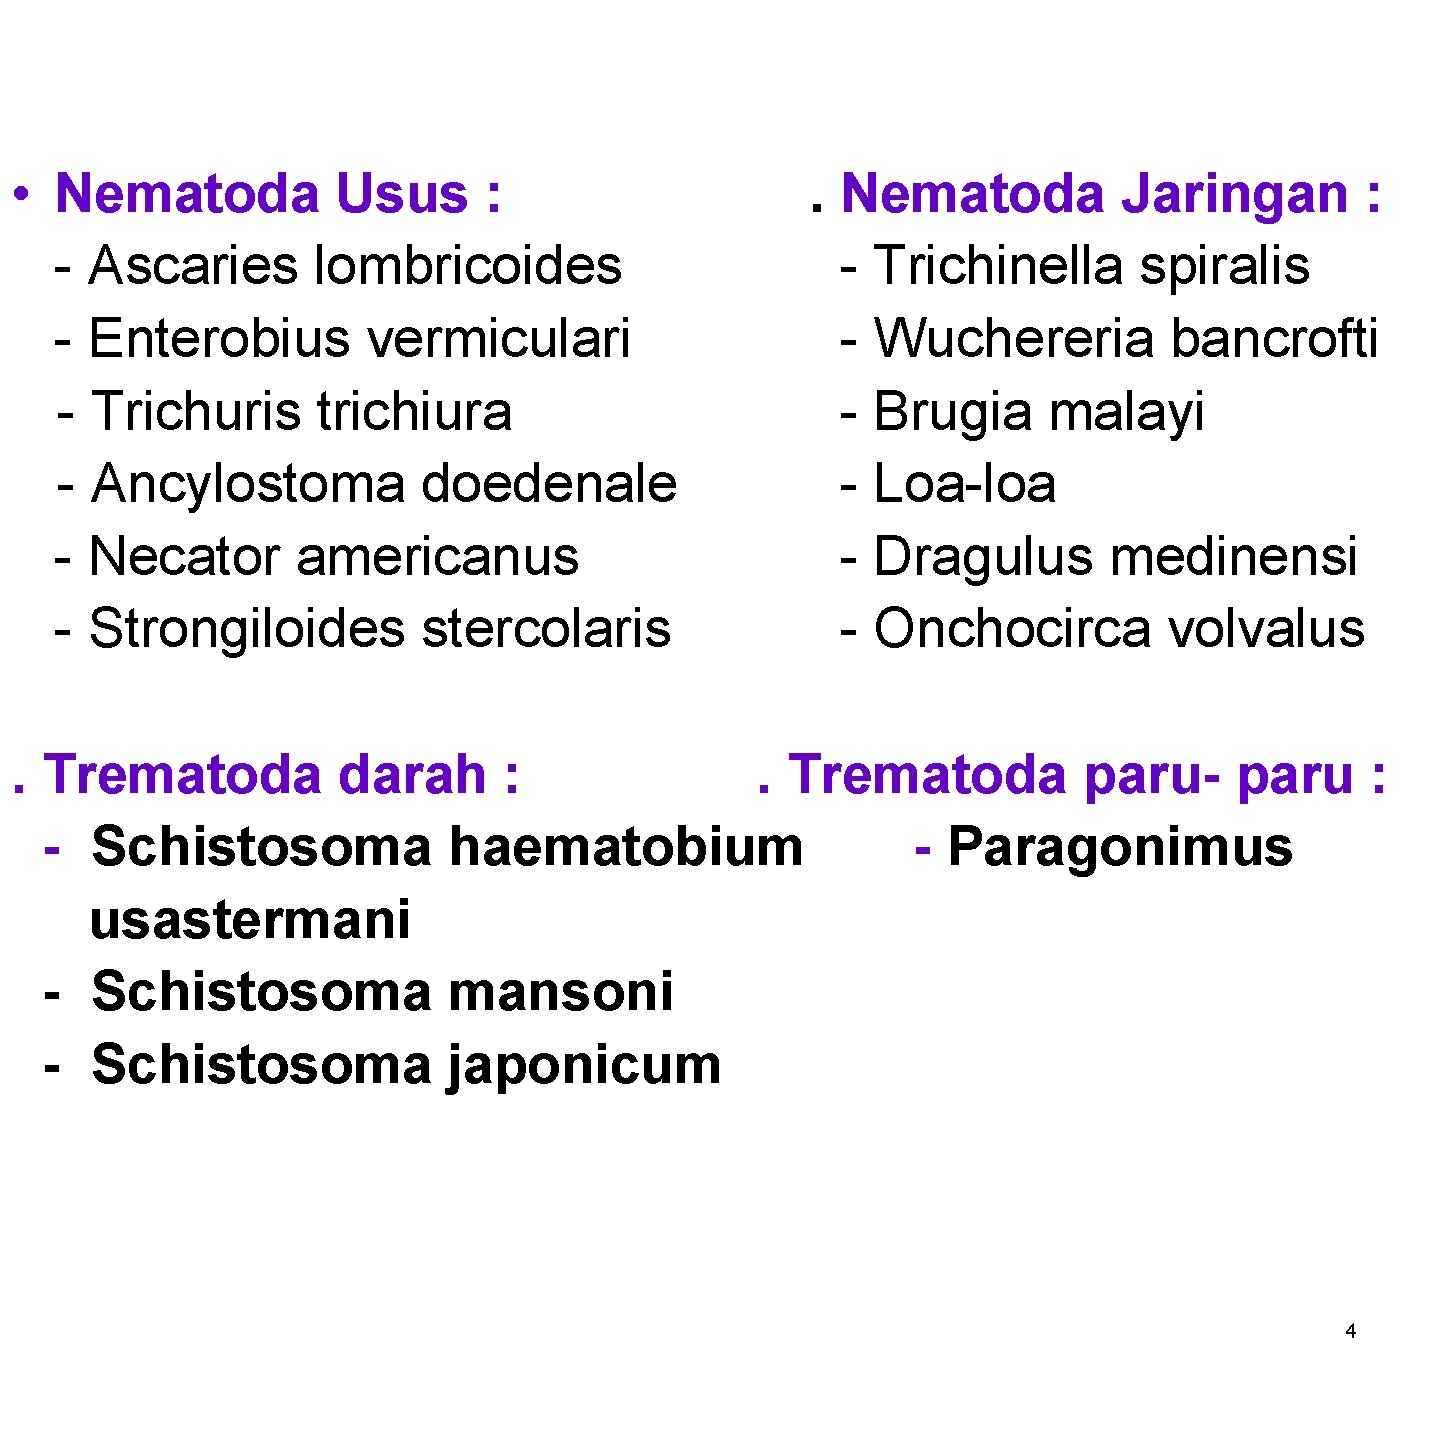  • Nematoda Usus : - Ascaries lombricoides - Enterobius vermiculari - Trichuris trichiura